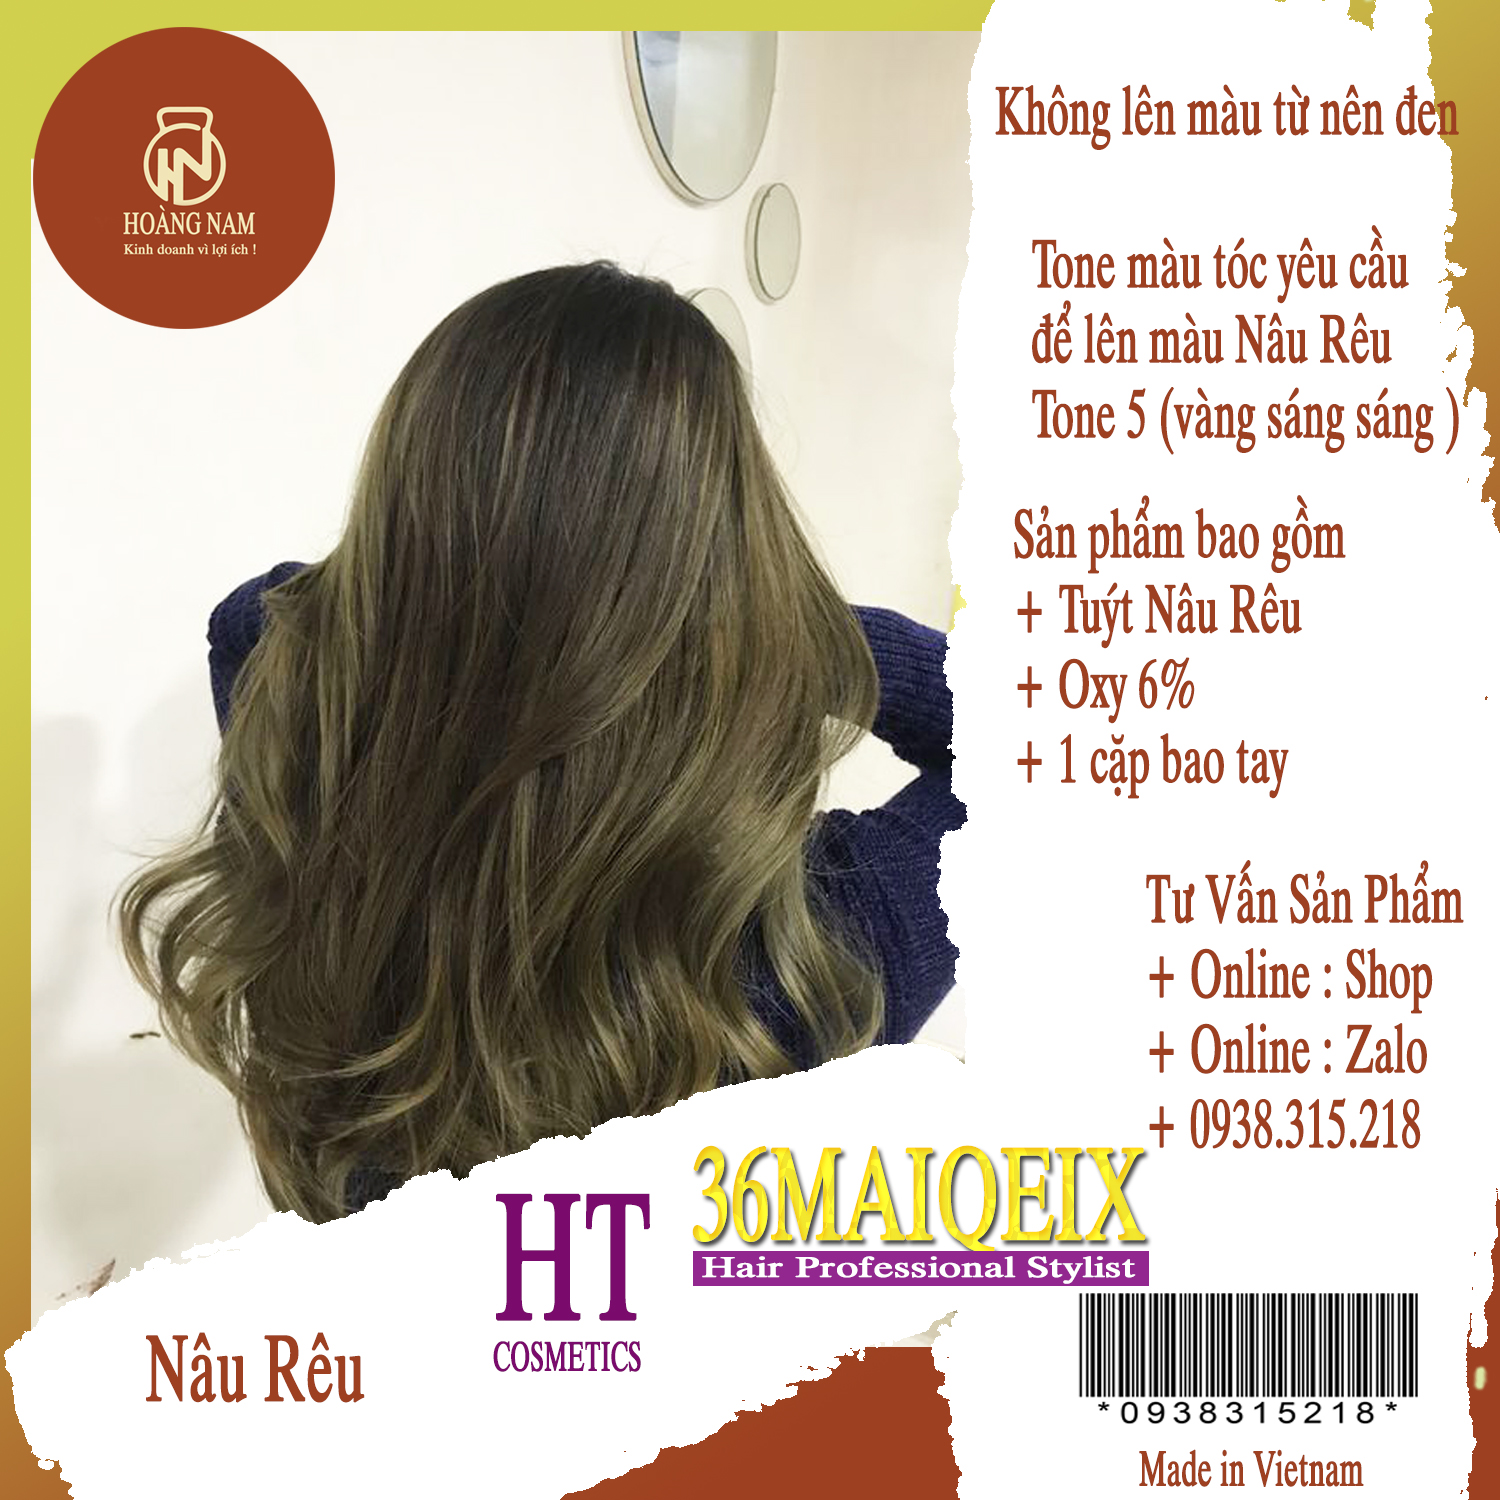 Tăng cường vẻ đẹp cho làn tóc của bạn với thuốc nhuộm tóc 36maiqeix. Với hơn 200 màu sắc khác nhau, thuốc nhuộm tóc 36maiqeix sẽ giúp bạn tạo nên phong cách mới và hoàn toàn khác biệt. Hãy thử ngay để cảm nhận sự khác biệt!